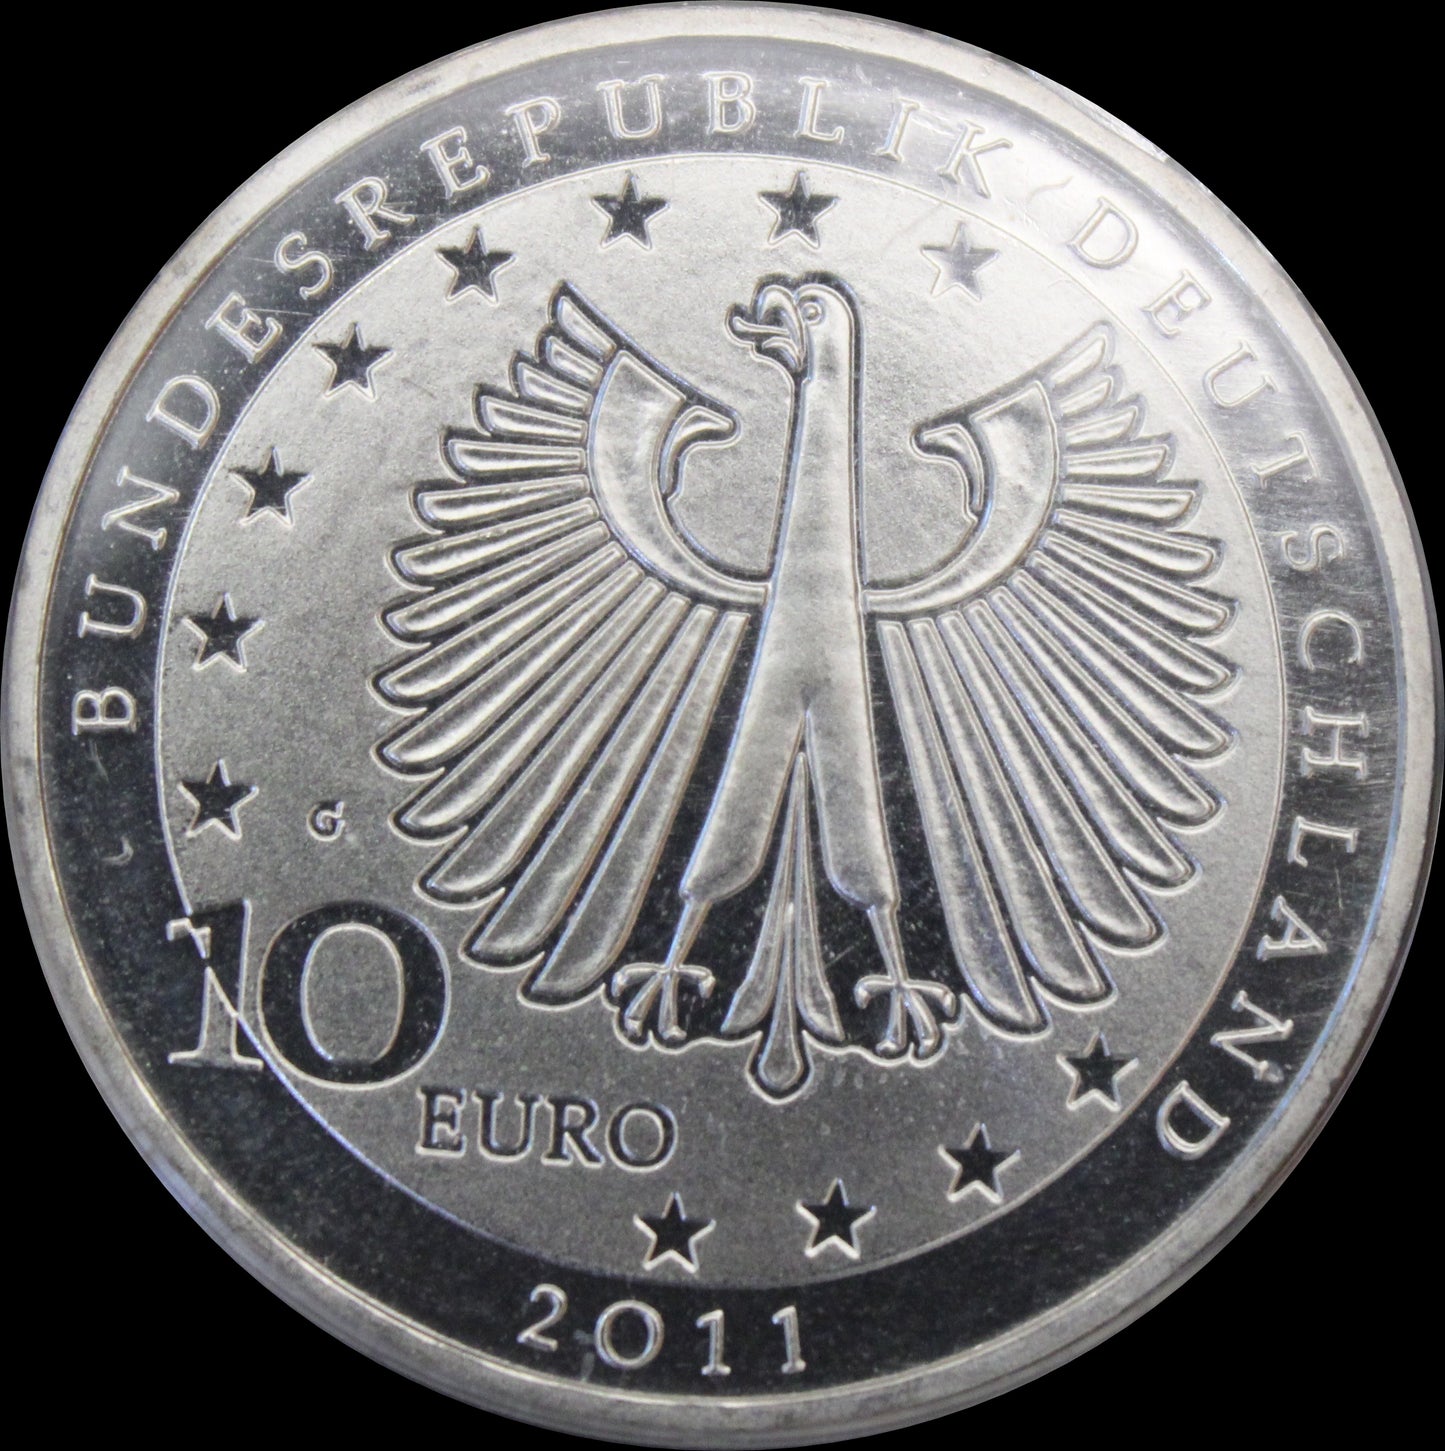 200. GEBURTSTAG FANZ LISZT, Serie 10 € Silber Gedenkmünzen Deutschland, Stempelglanz, 2011